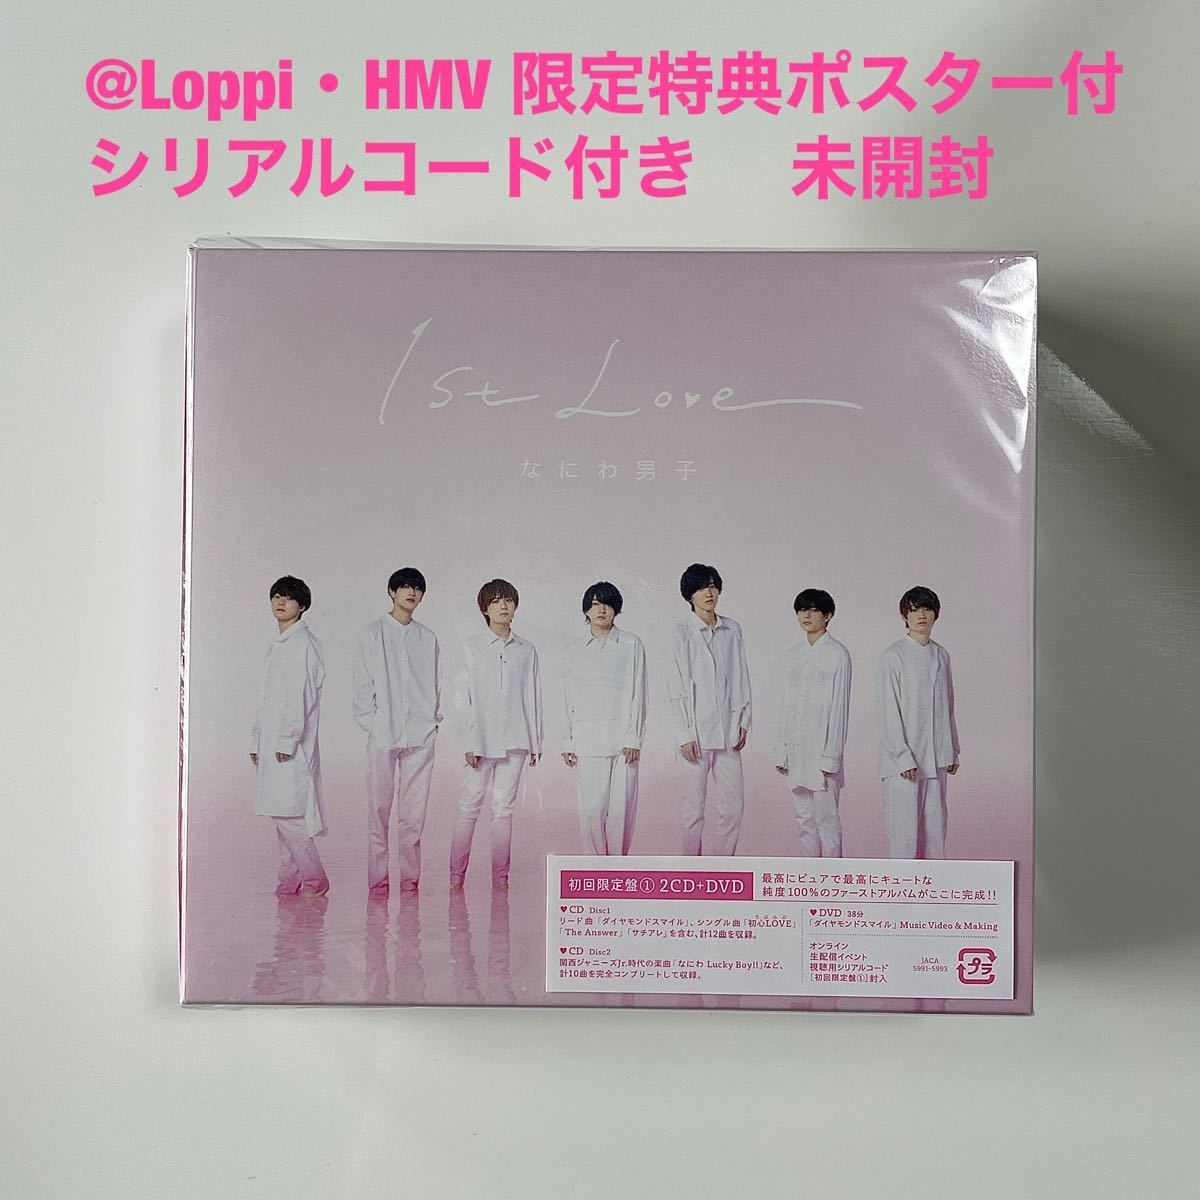 なにわ男子 1stLove 初回限定1 通常盤 dvd アルバム fkip.unmul.ac.id